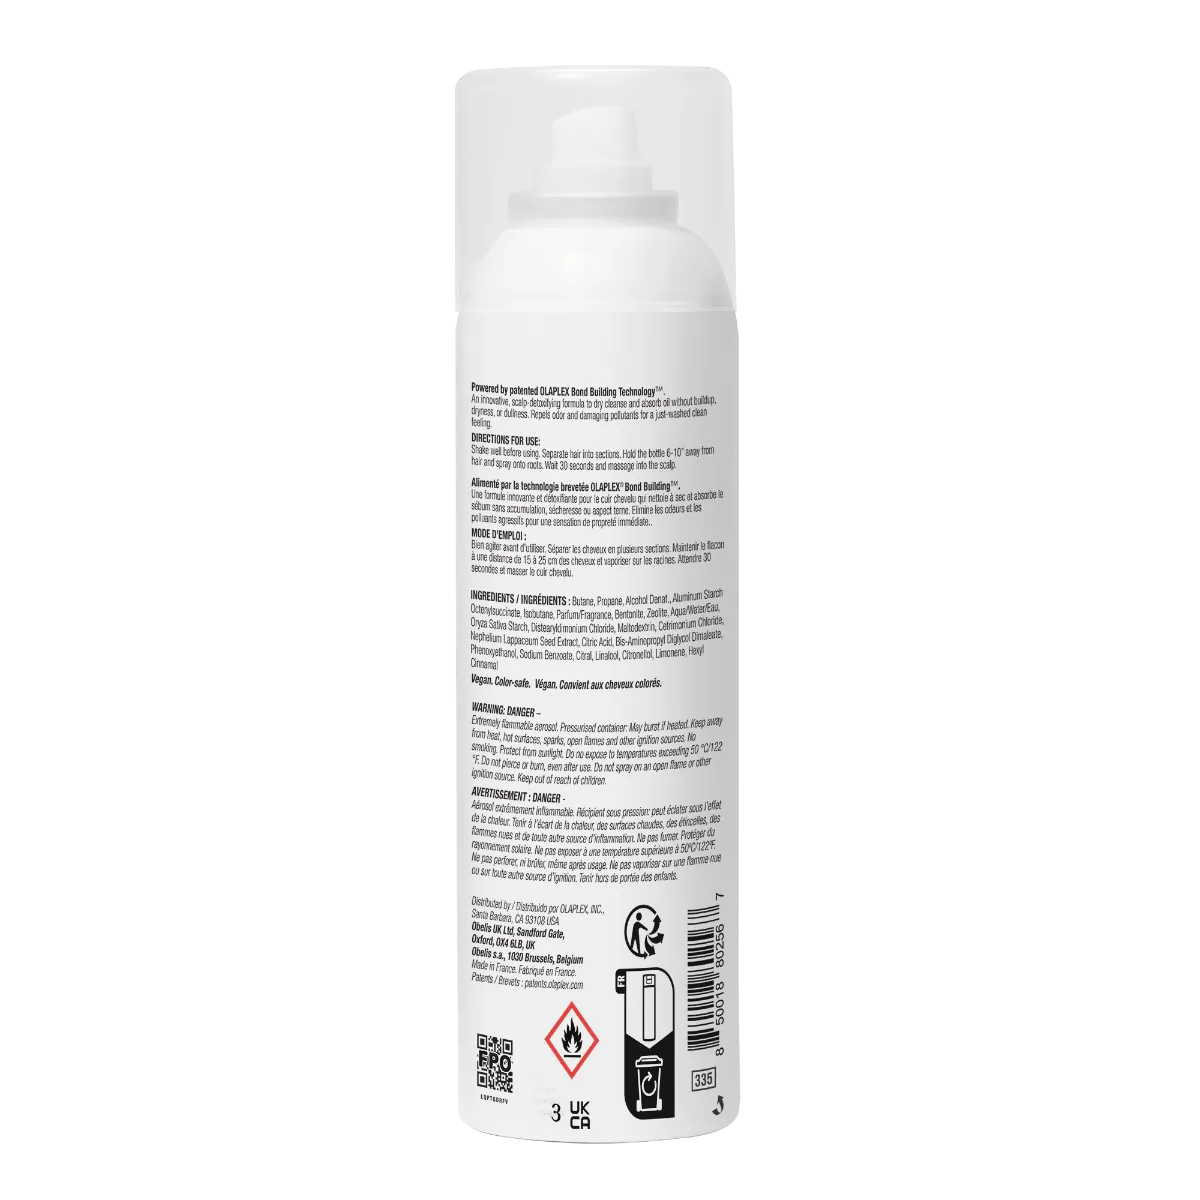 Olaplex N4D Clean Volume Detox Dry Shampoo 250 Ml Shampoo secco